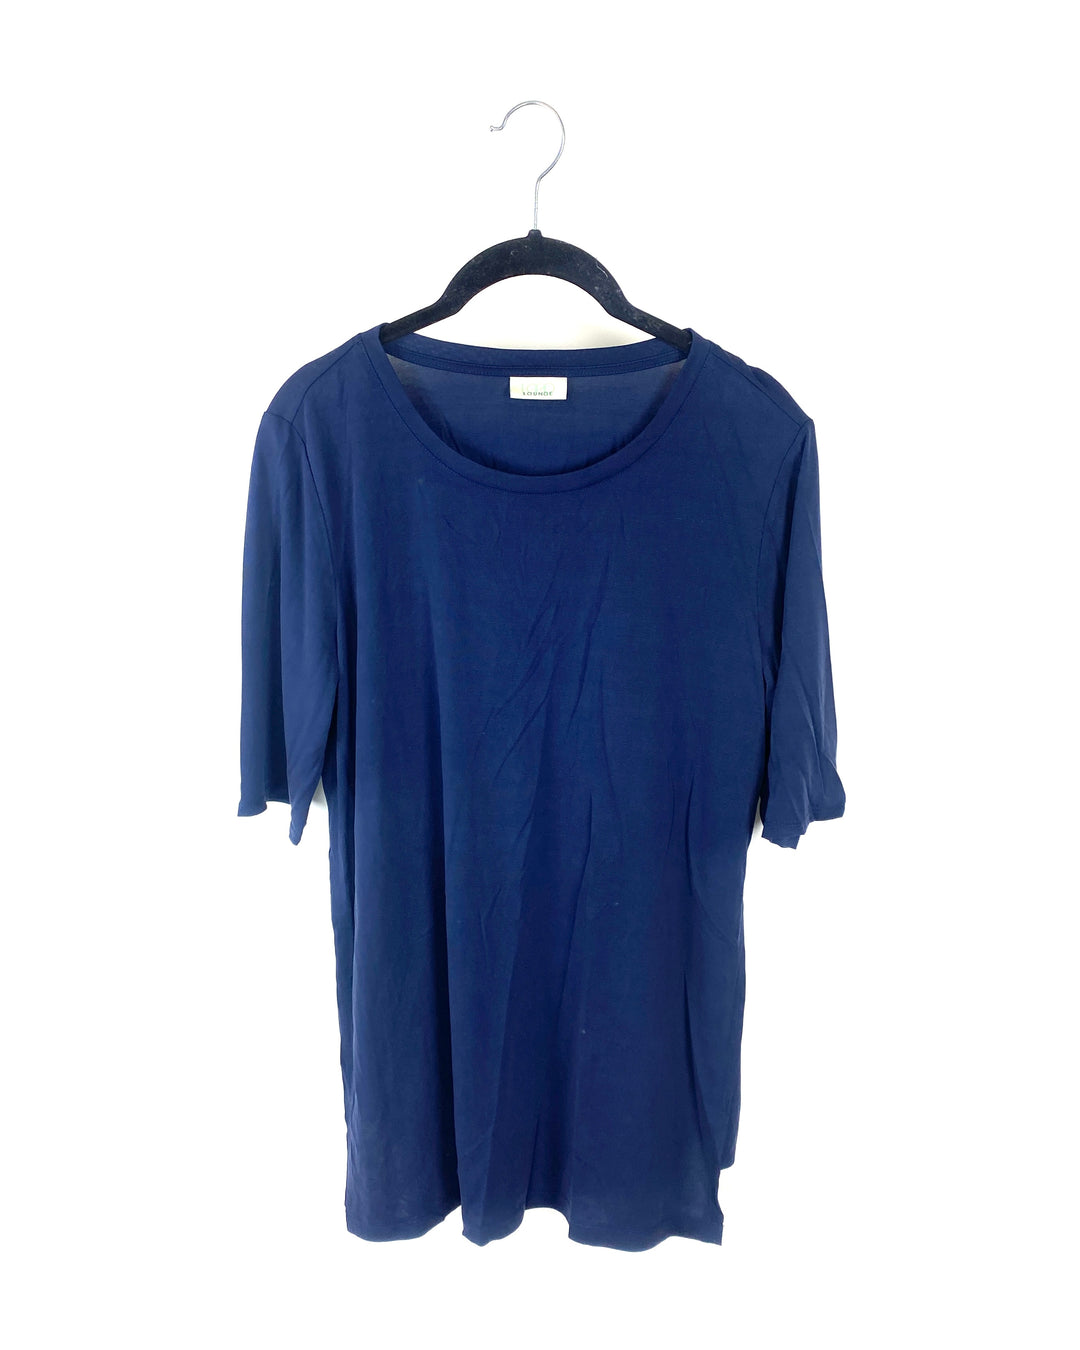 Navy Blue T-Shirt - Size 6-8